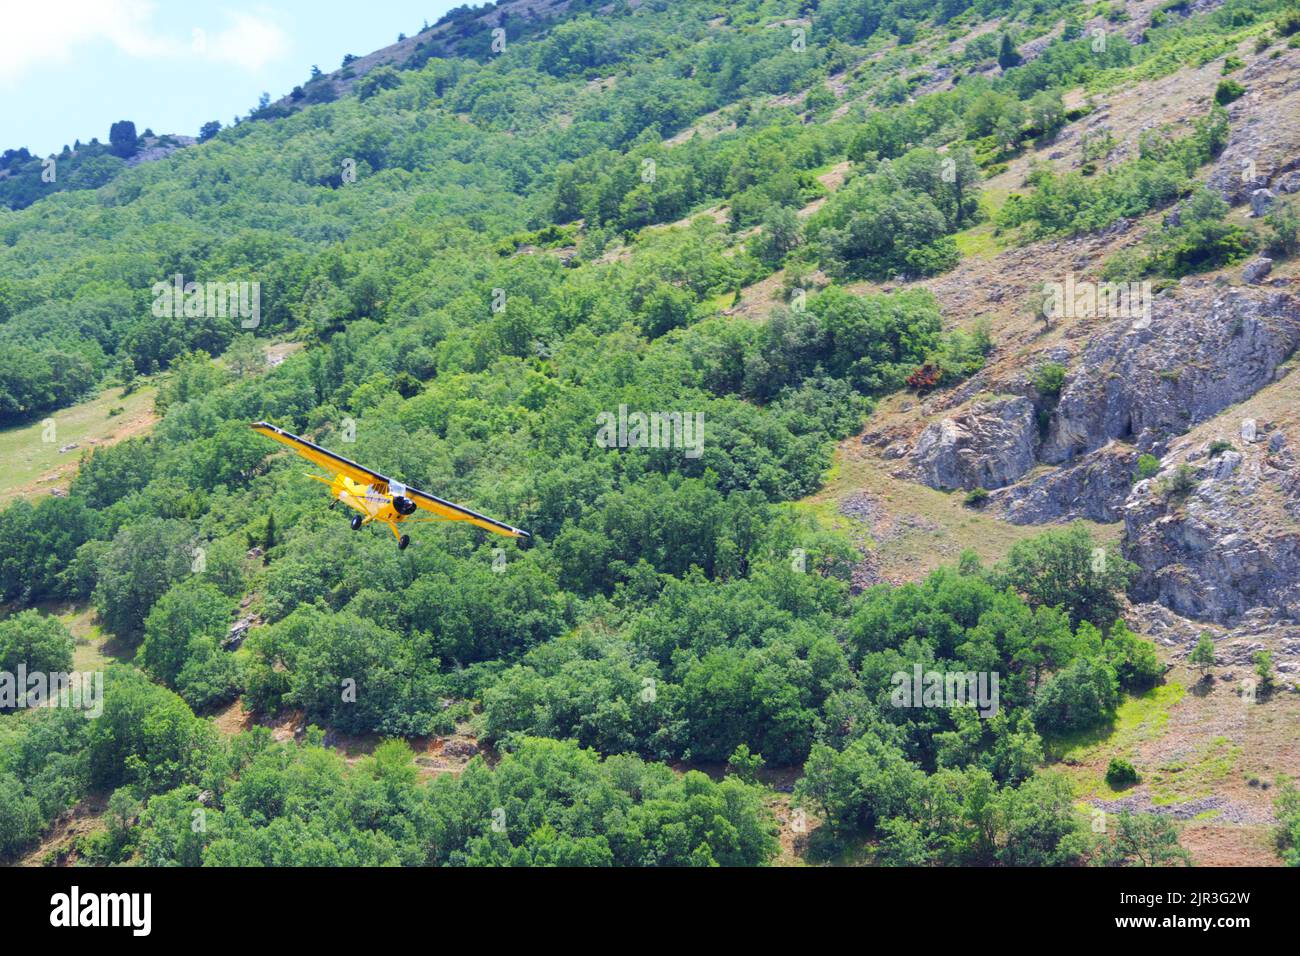 Ein einmotoriger gelber Flieger, der in geringer Höhe nahe am Boden fliegt Stockfoto